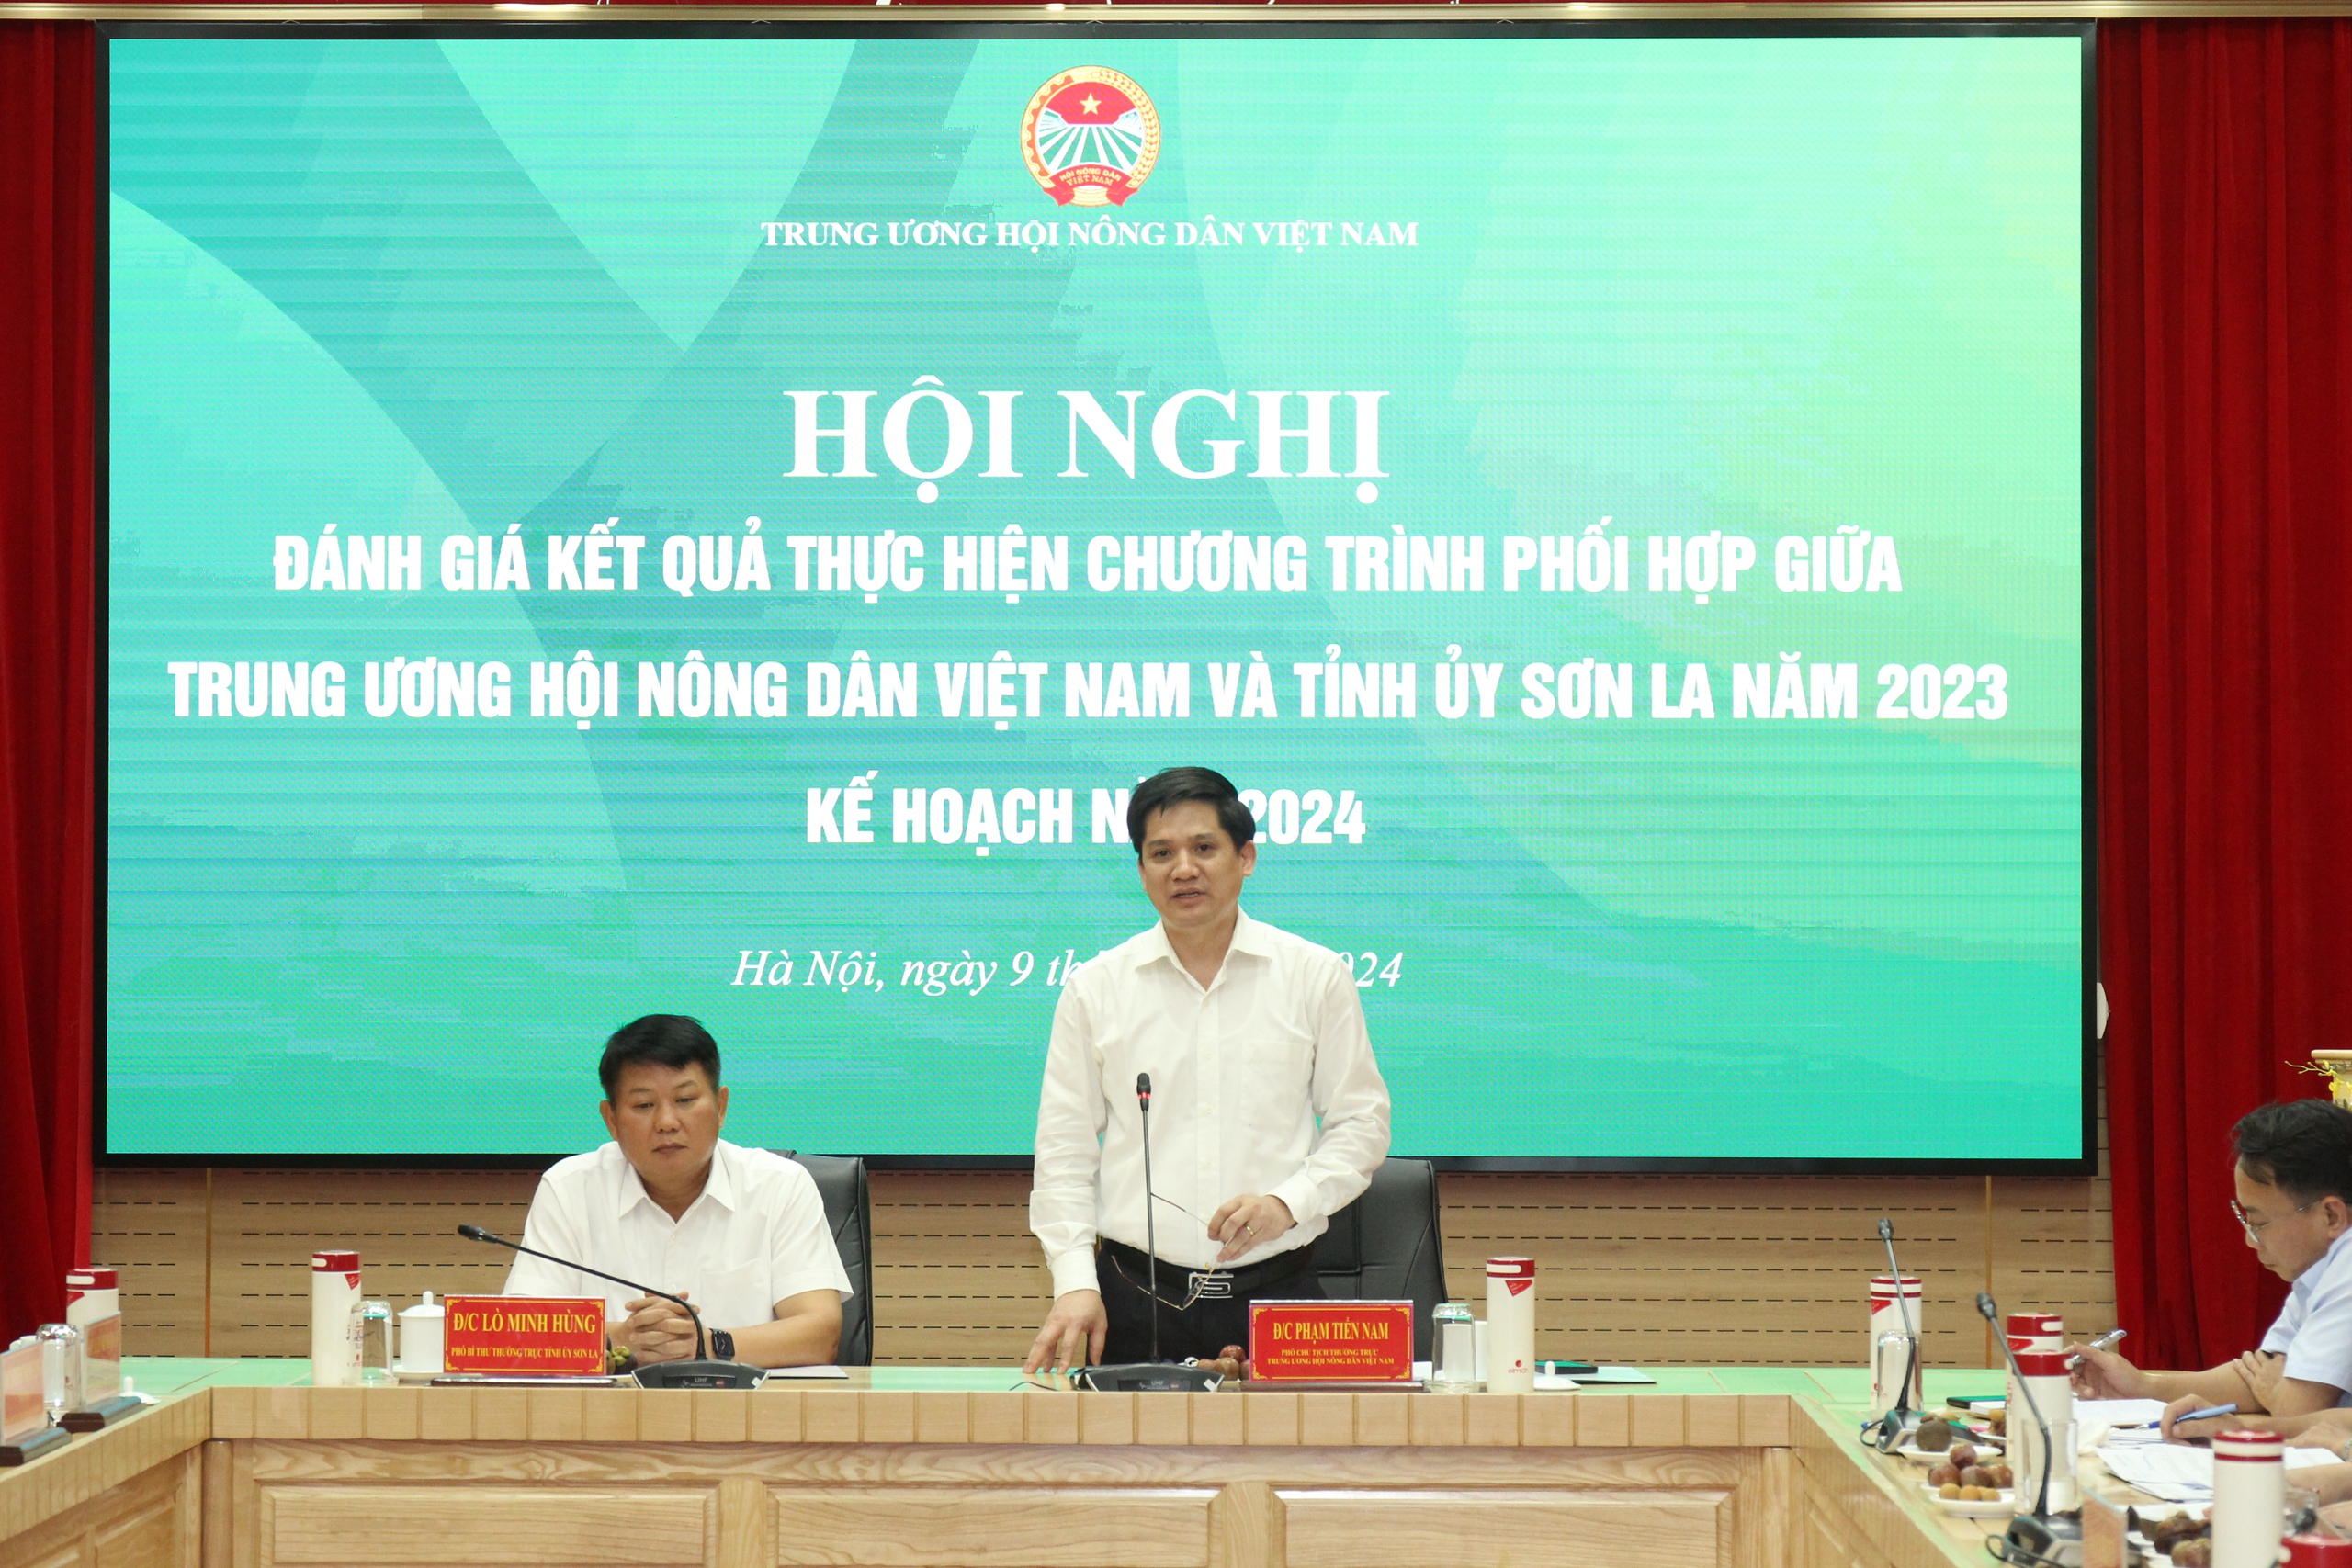 Trung ương Hội Nông dân Việt Nam, Tỉnh ủy Sơn La đánh giá kết quả thực hiện chương trình phối hợp năm 2023- Ảnh 6.